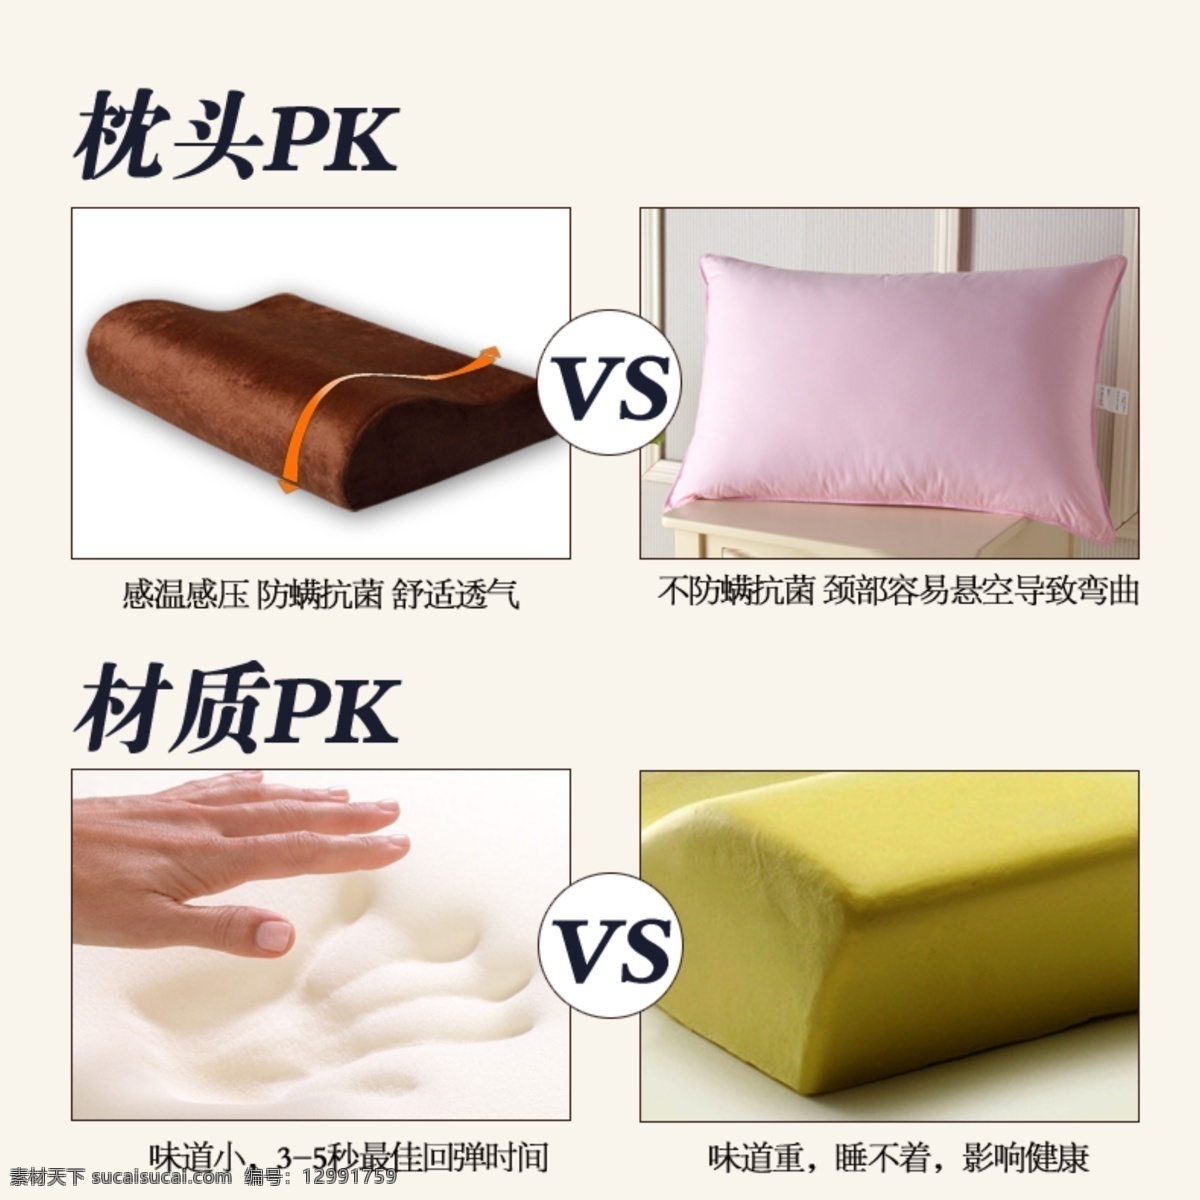 其他模板 网页模板 源文件 枕头 比较 模板下载 枕头比较 枕头pk 记忆枕 太空枕 网页素材